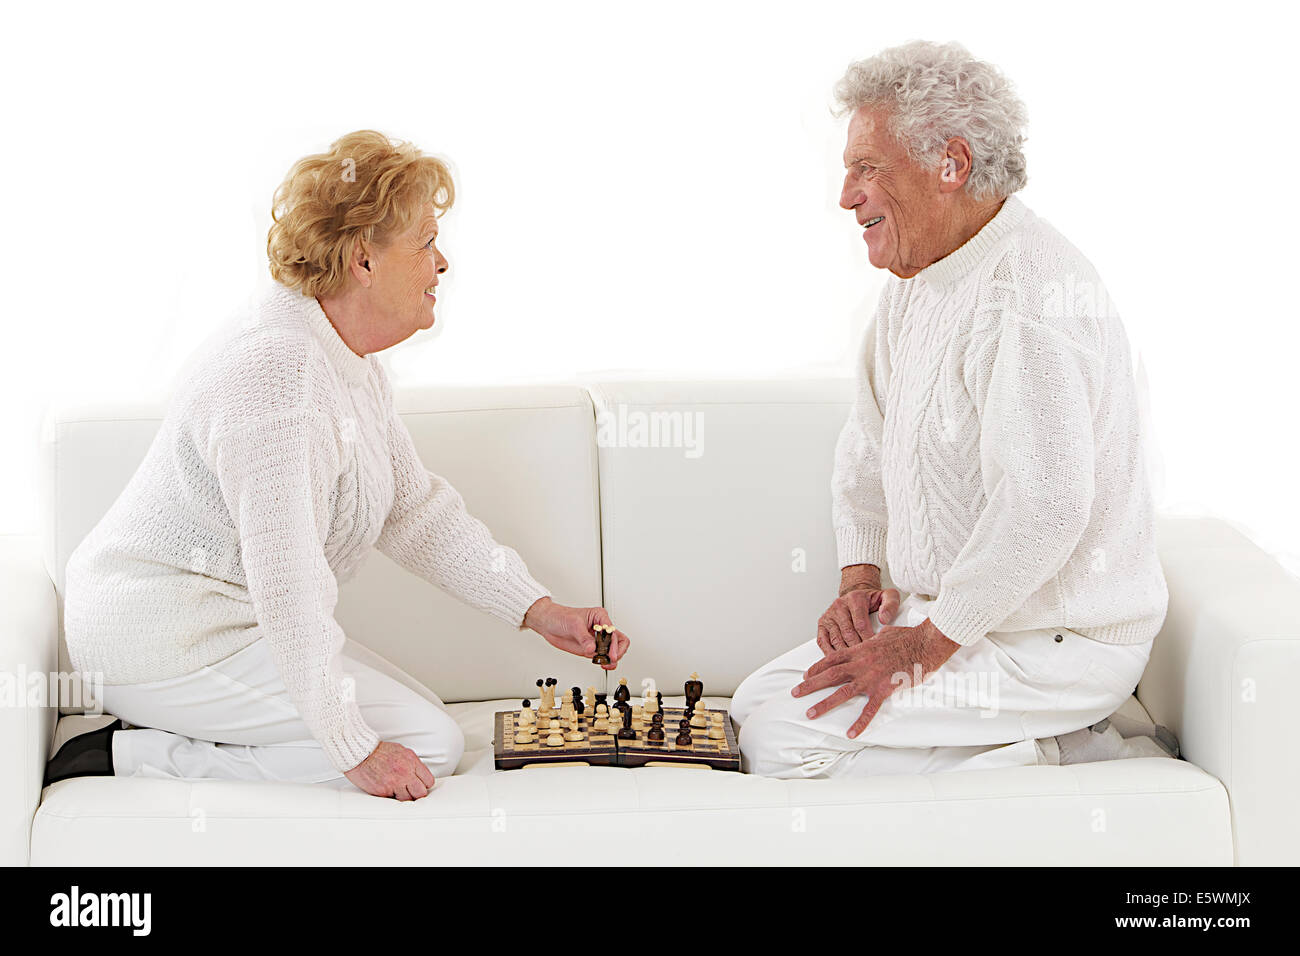 Los ancianos jugando al ajedrez Foto de stock